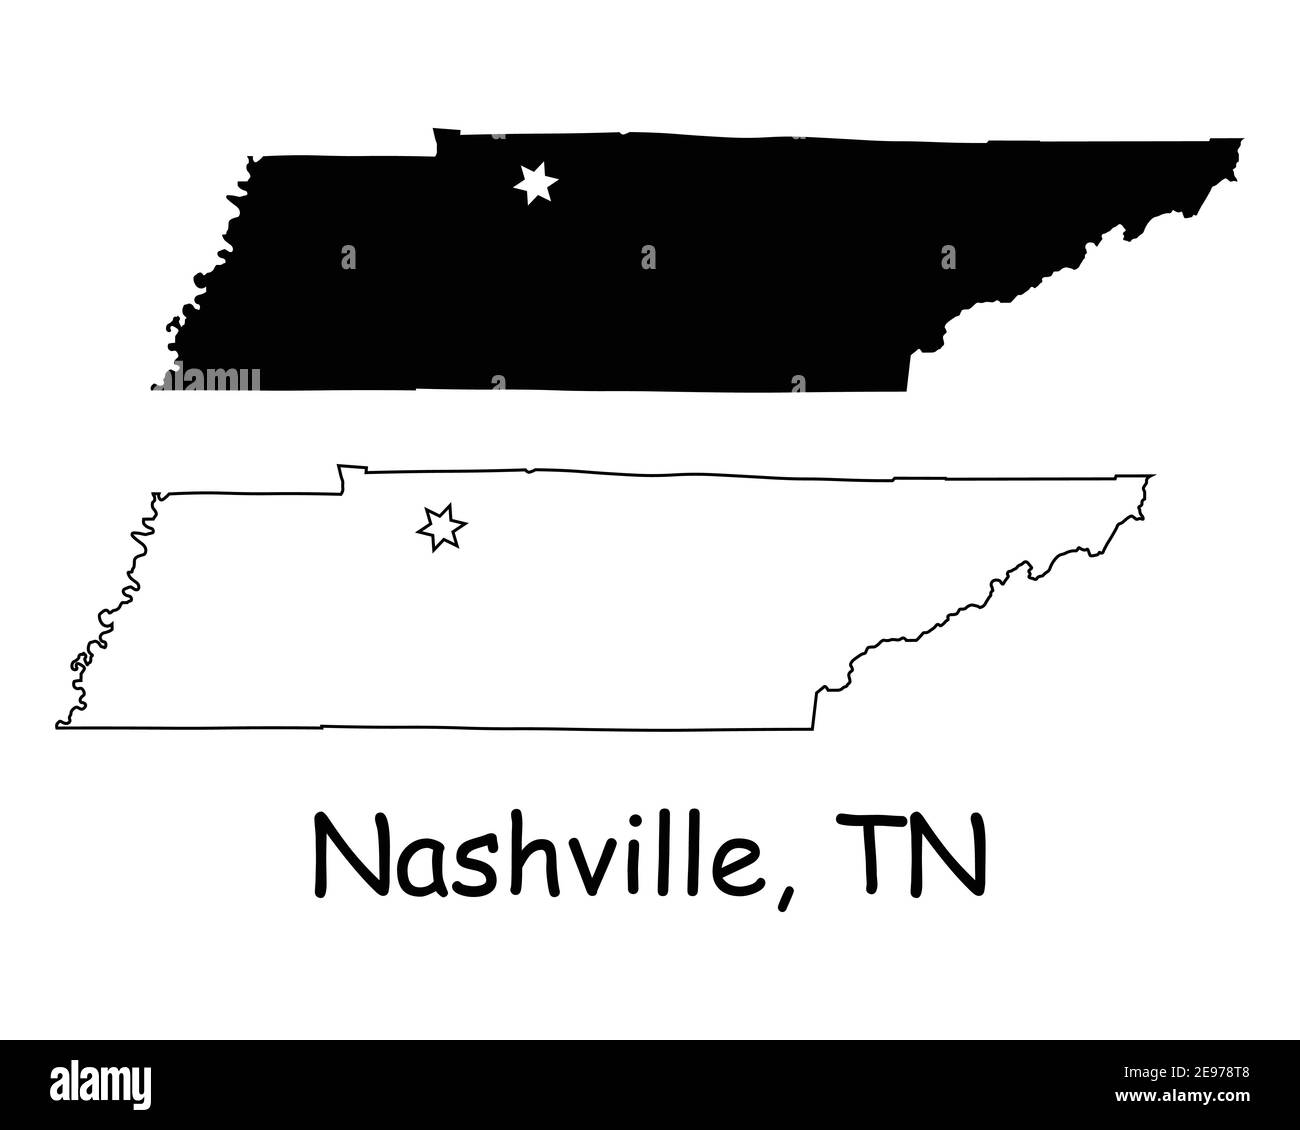 Tennessee TN State Map USA mit Capital City Star in Nashville. Schwarze Silhouette und umreißen isolierte Karten auf weißem Hintergrund. EPS-Vektor Stock Vektor